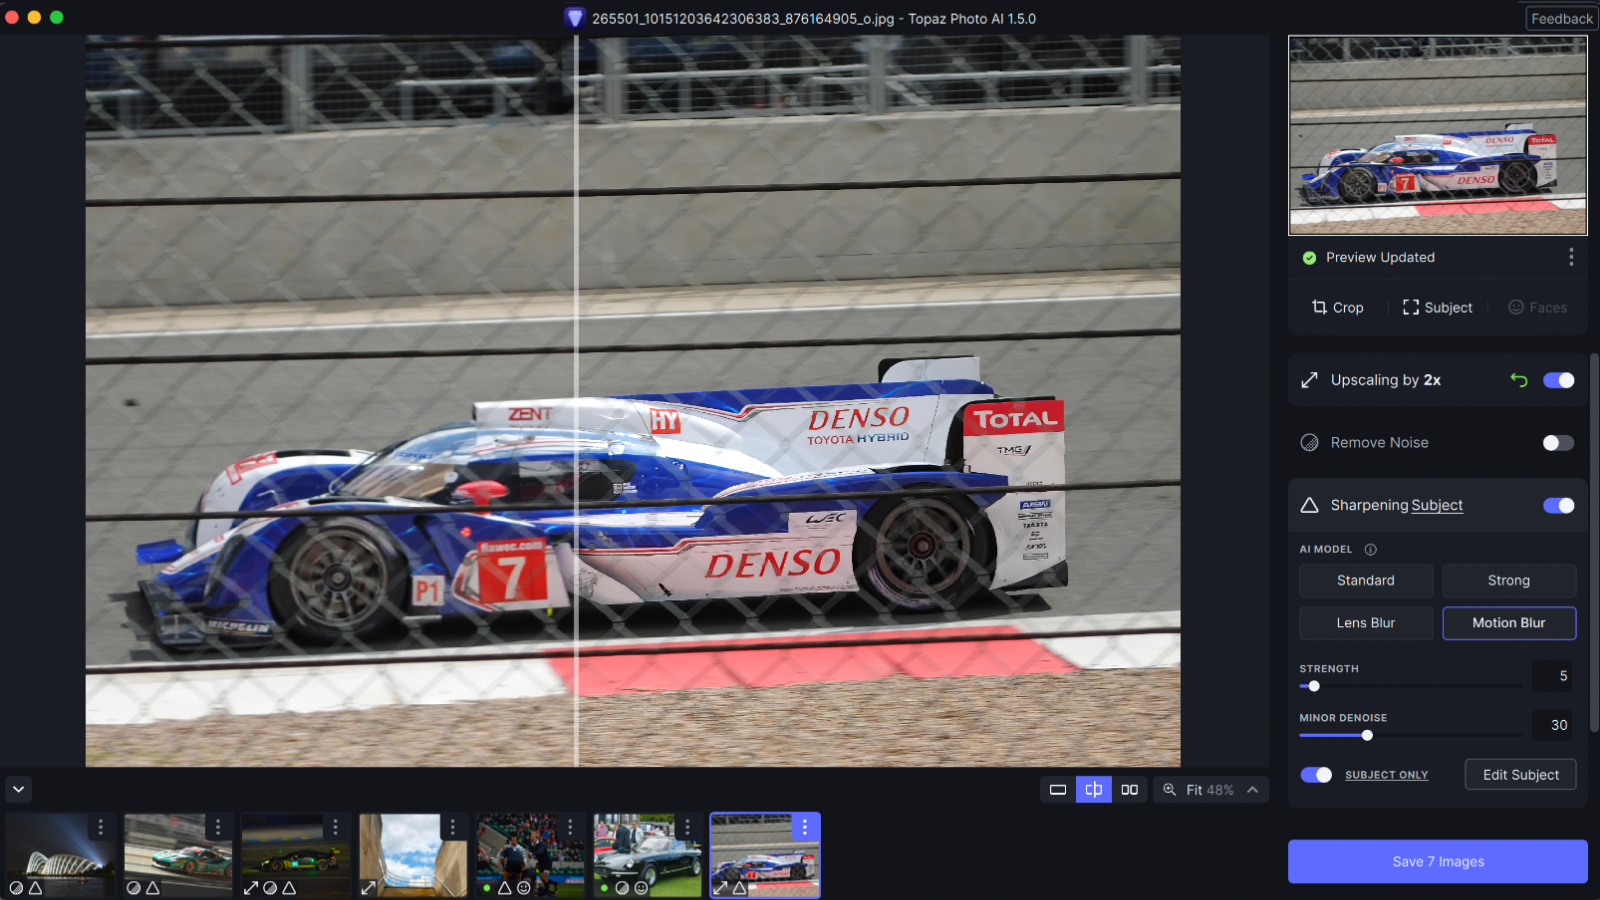 Topaz Photo AI correcting an image of an endurance racing car